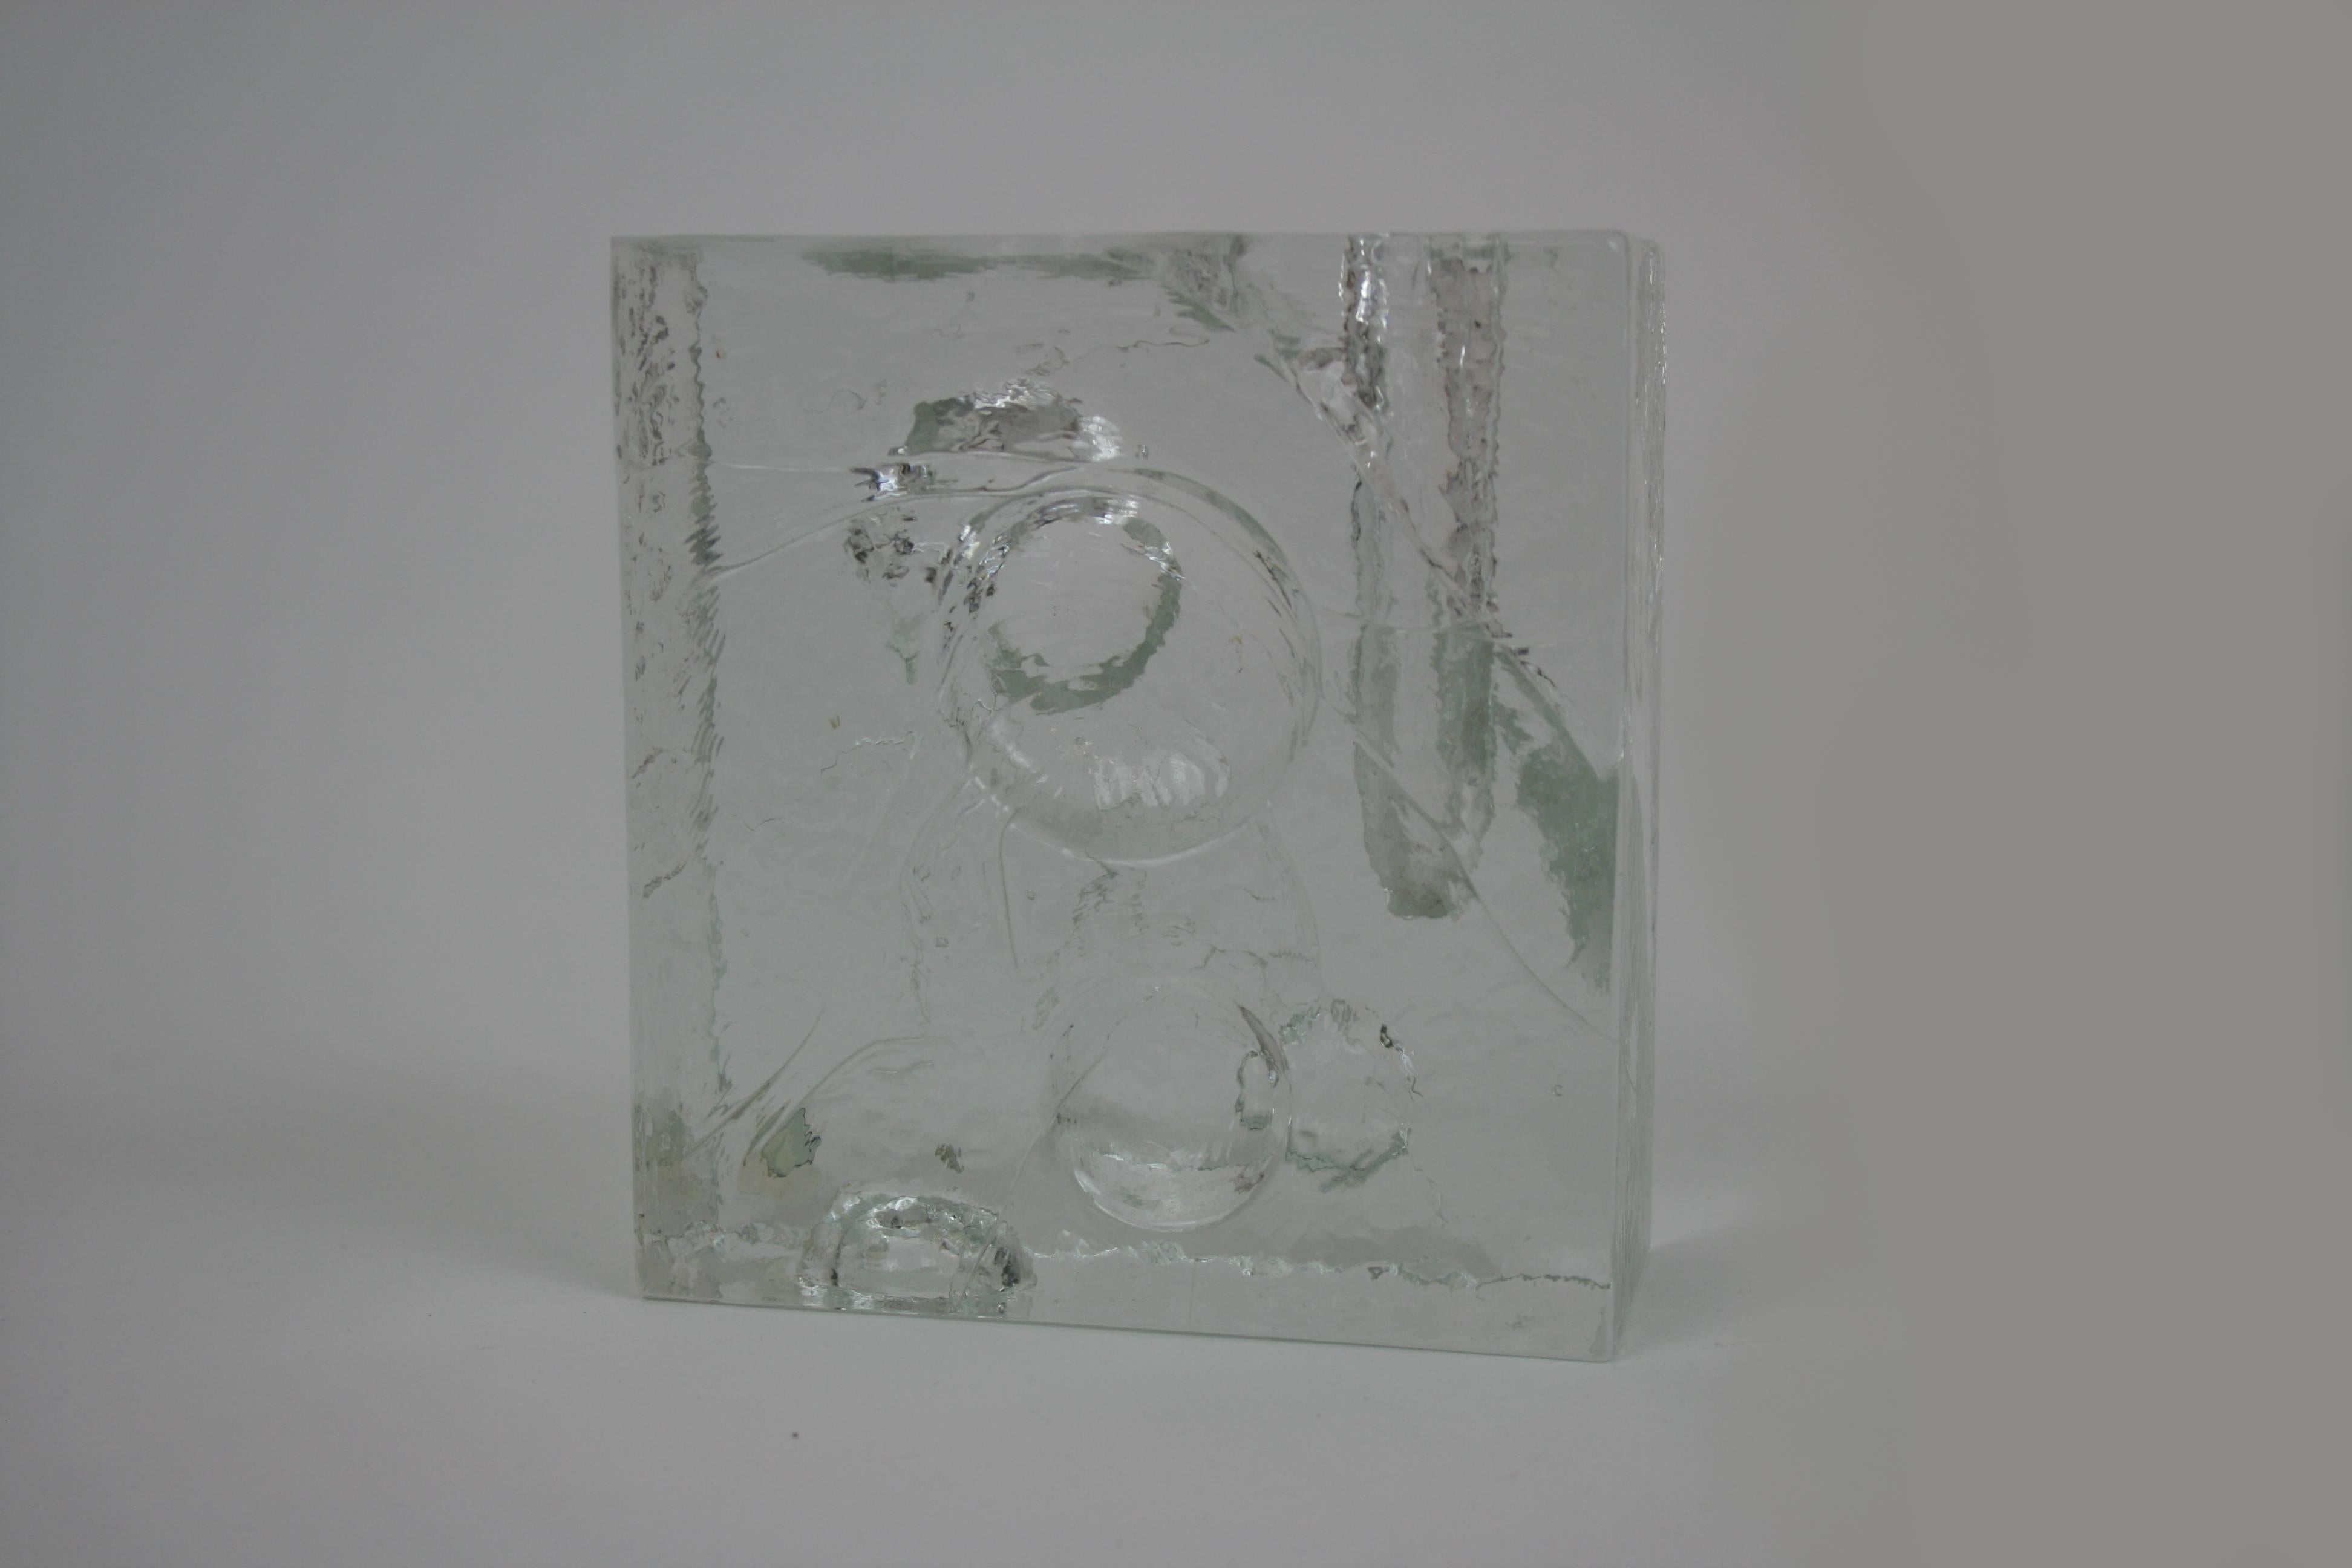 Skulpturale Vase aus Eisglas des schwedischen Herstellers Pukeberg, entworfen von Uno Westerberg. Dieses fröhliche und helle Objekt bietet einen authentischen und humorvollen Blick zurück in die Lebendigkeit der Designperiode der späten 1960er